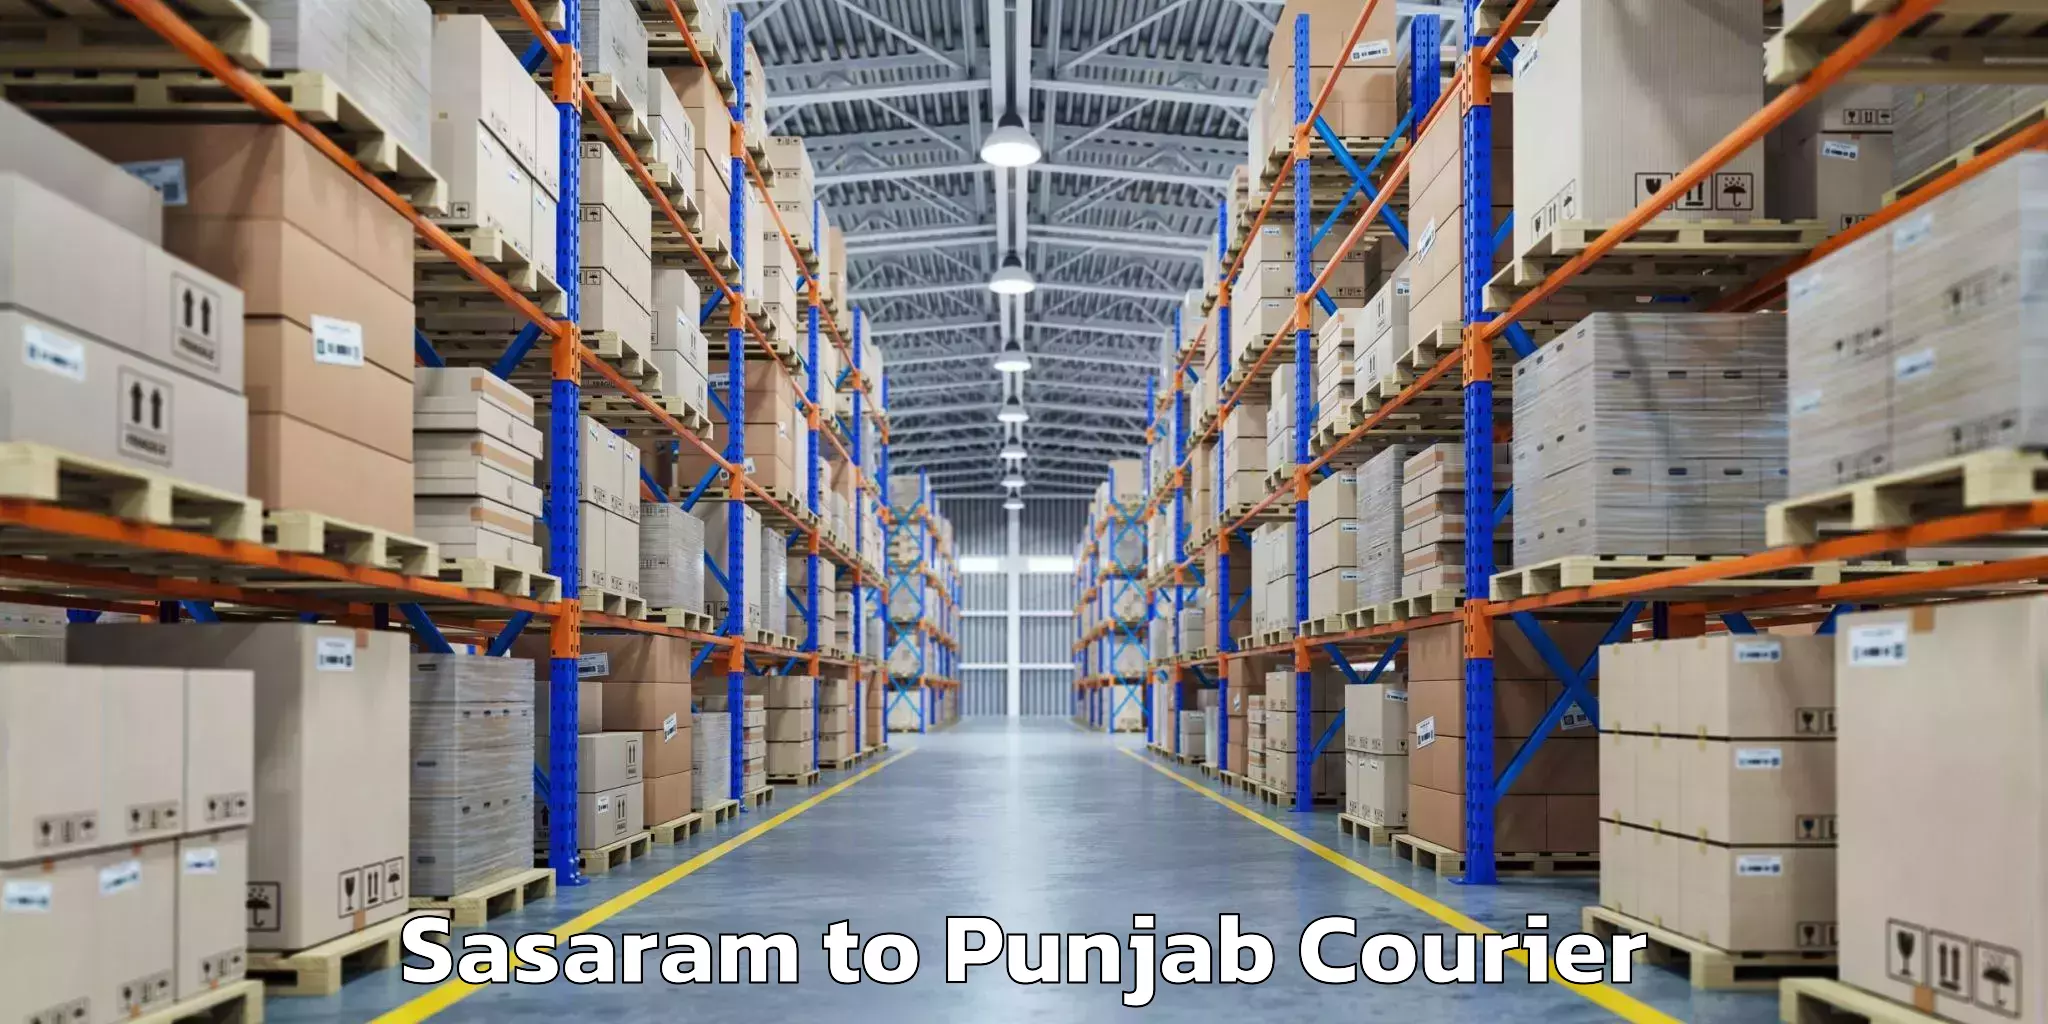 Baggage transport logistics Sasaram to Punjab